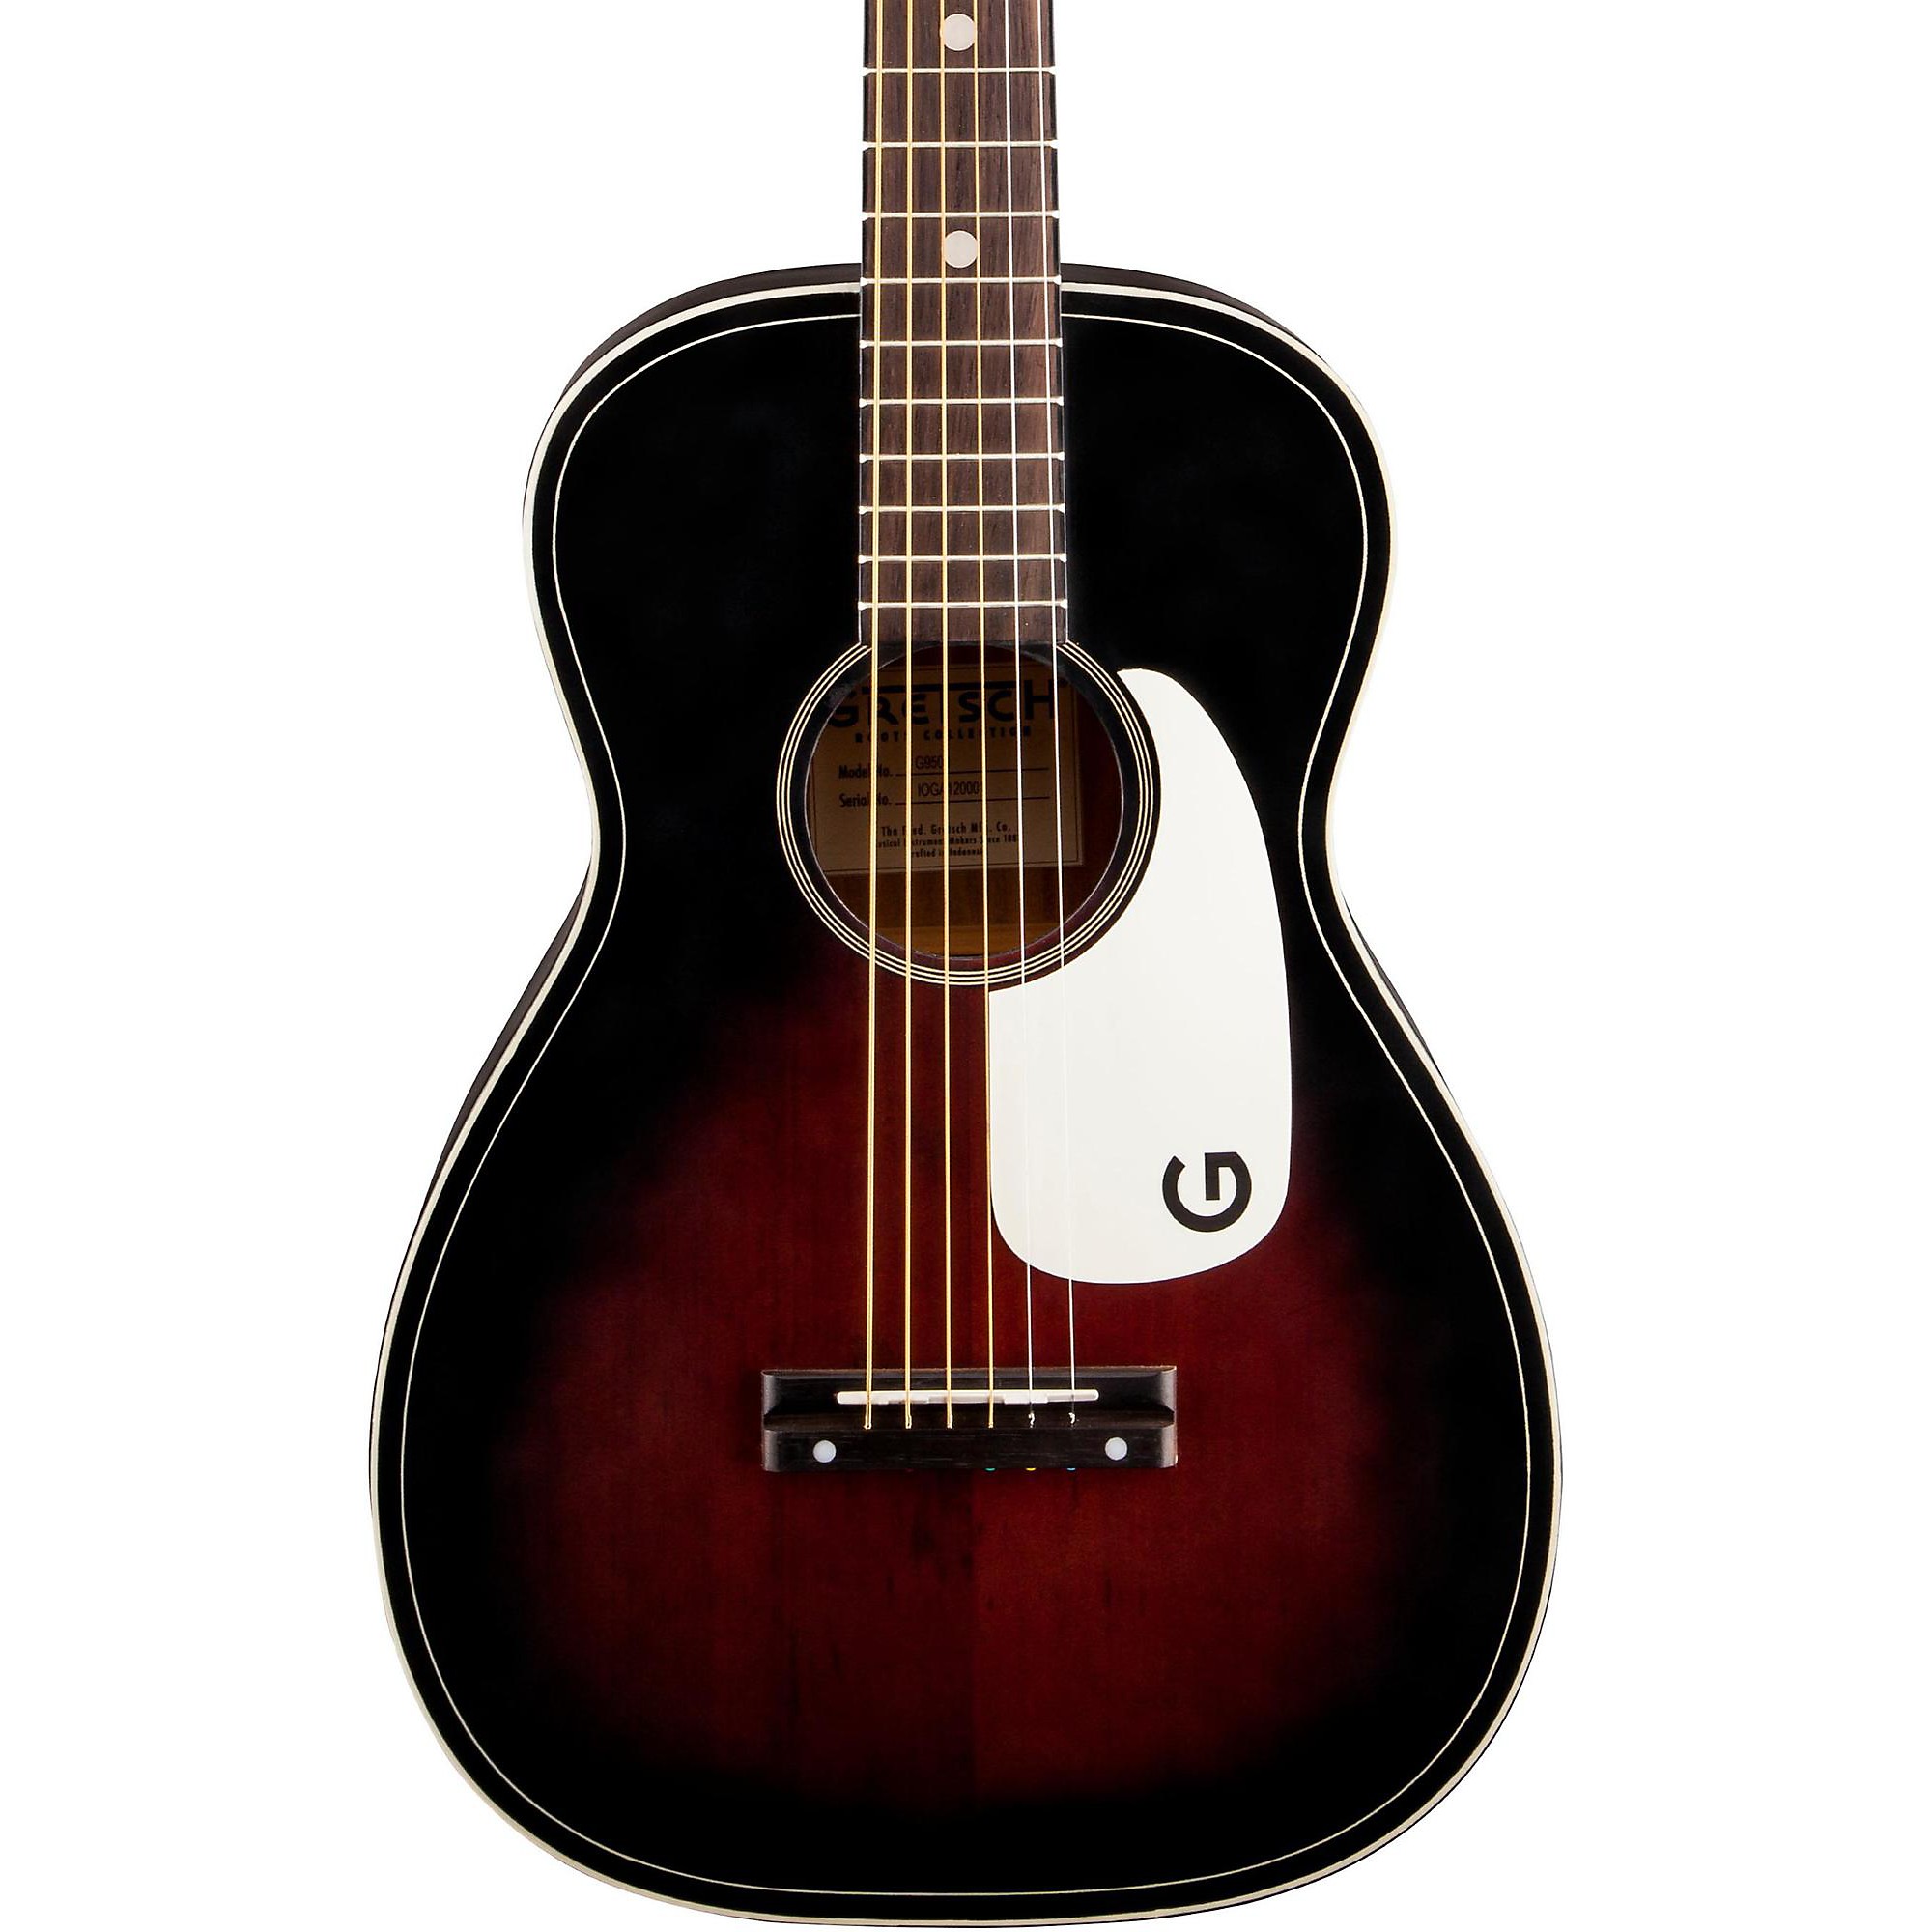 Gretsch Guitars Jim Dandy Акустическая гитара с плоским верхом, 2 цвета Sunburst